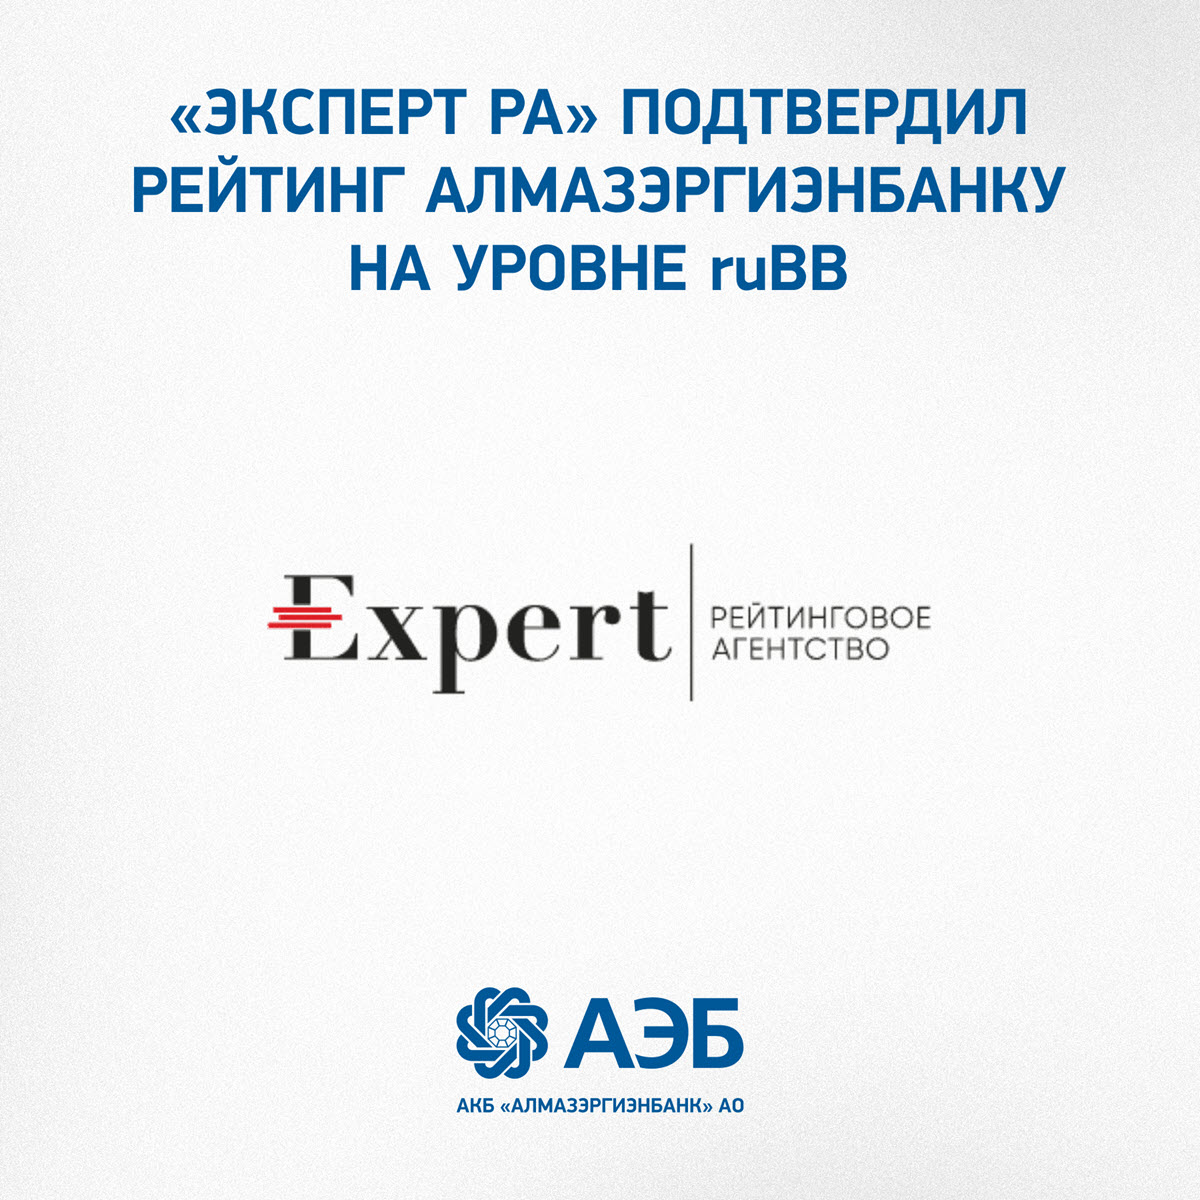 «Эксперт РА» подтвердил рейтинг Алмазэргиэнбанку на уровне ruBB